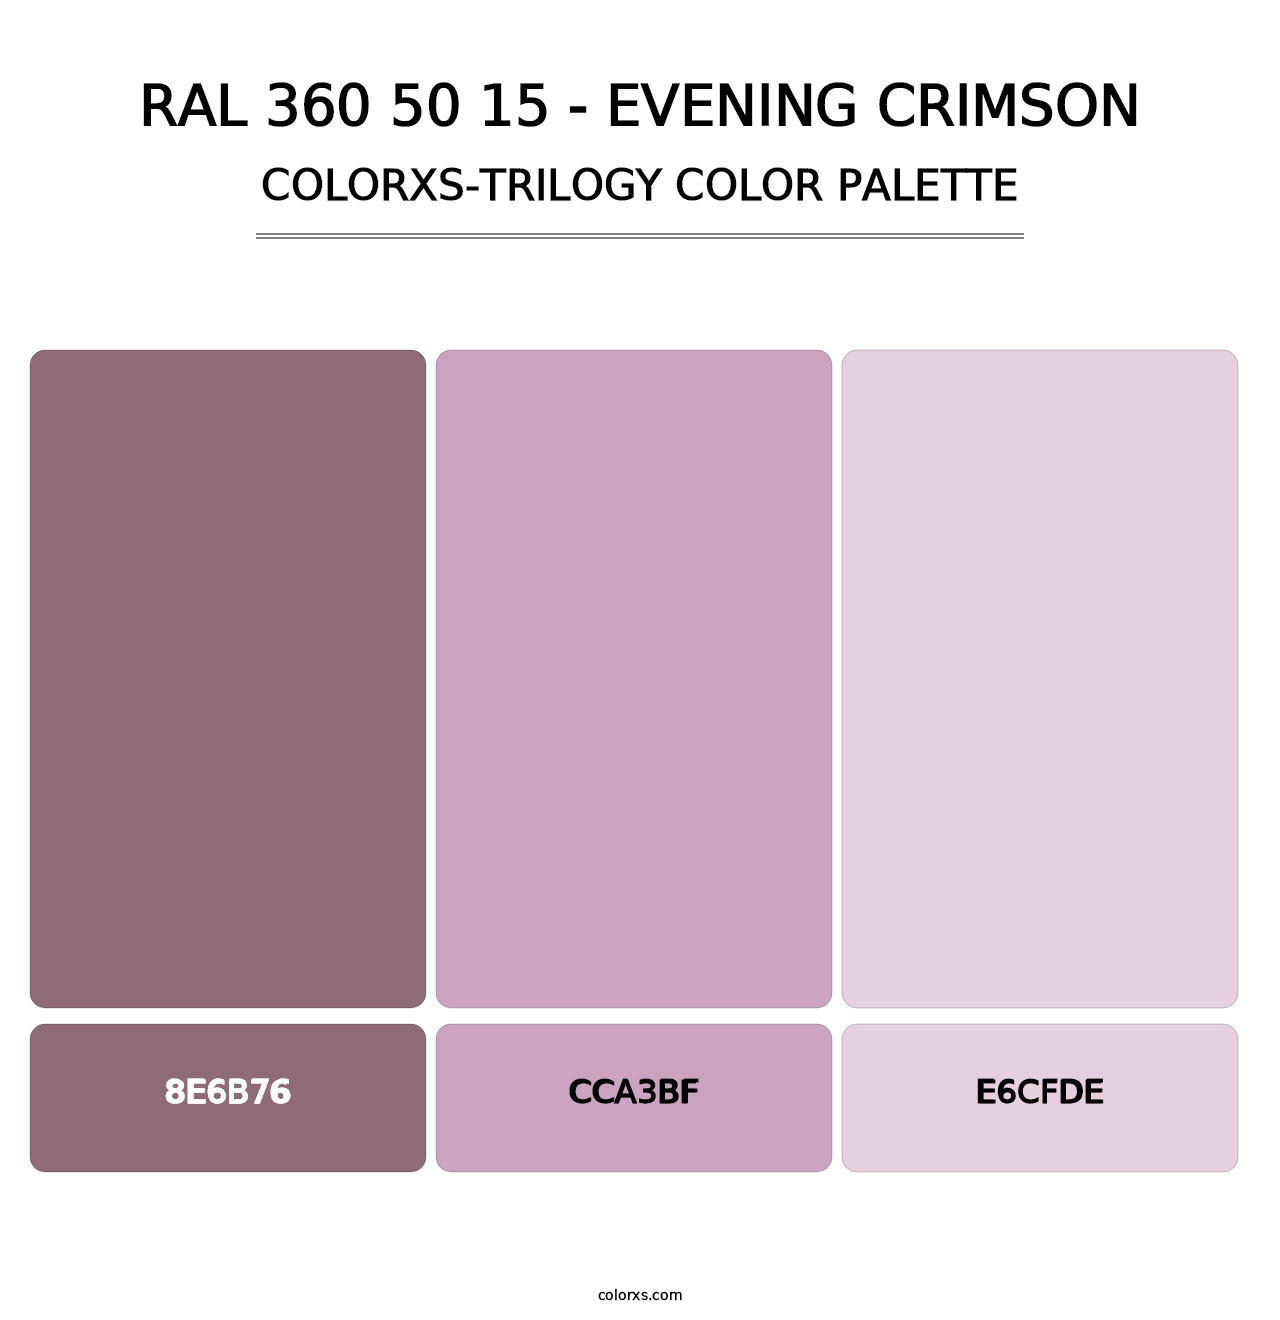 RAL 360 50 15 - Evening Crimson - Colorxs Trilogy Palette